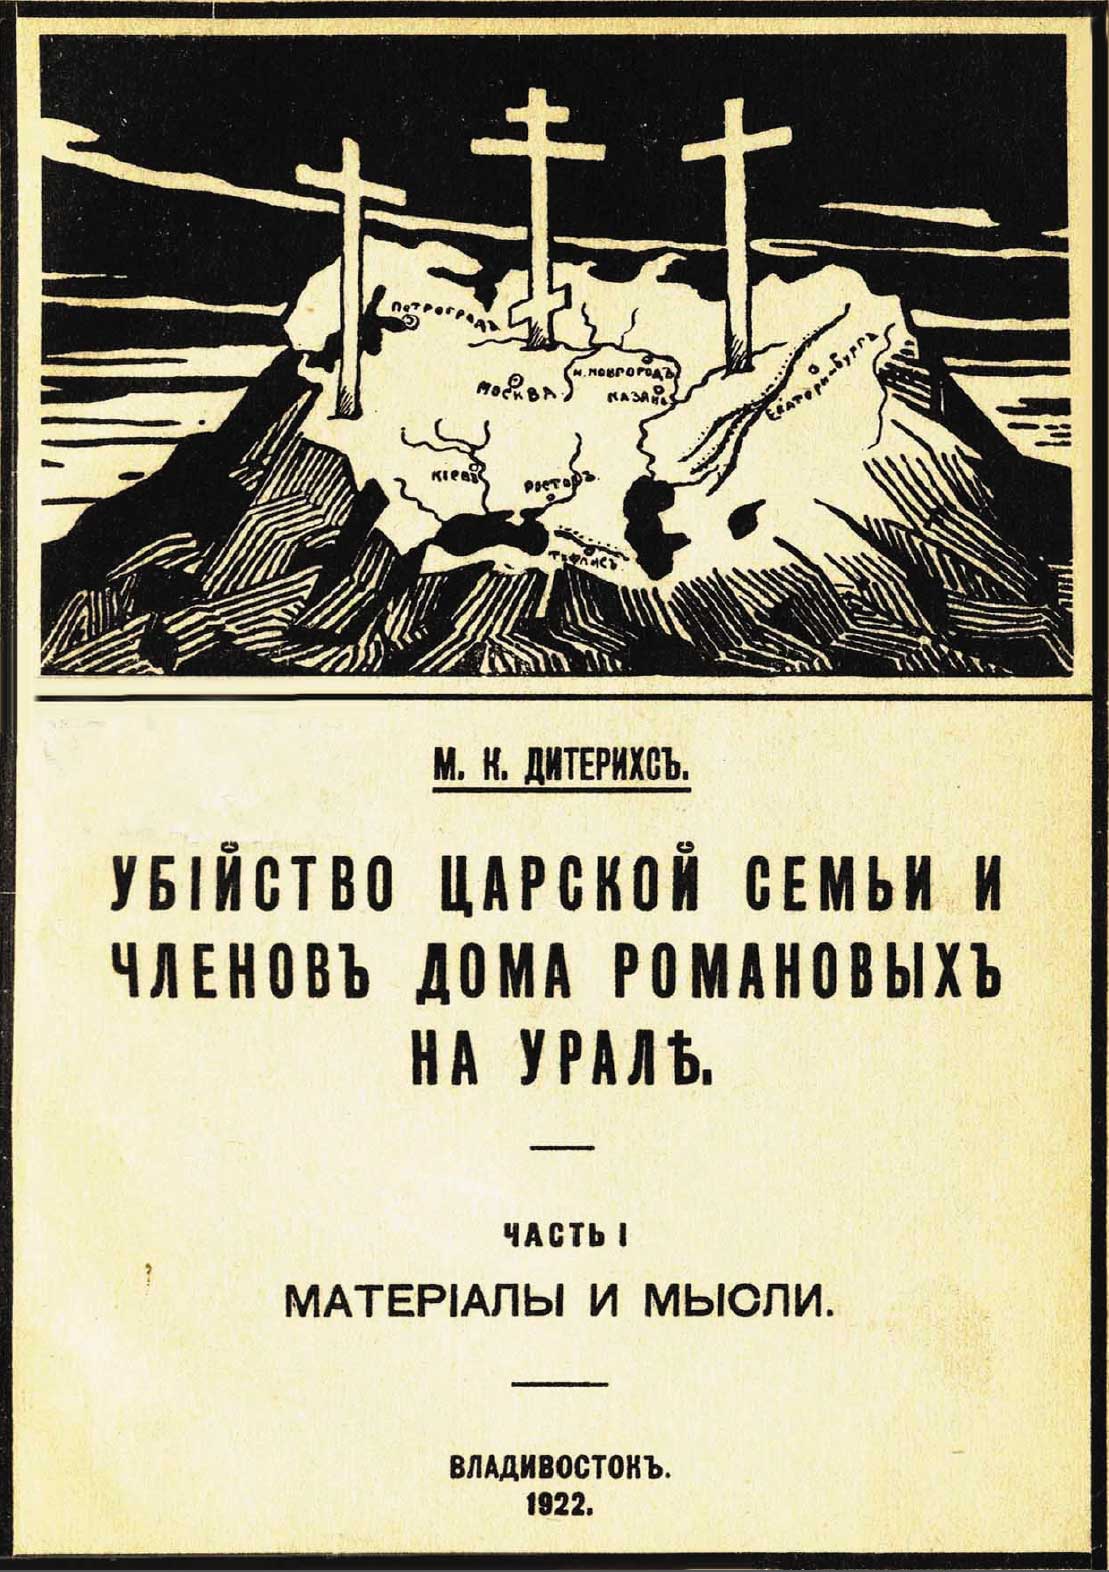 Книга генерала М.К. Дитерихса, который сыграл значительную роль в раскрытии преступления, совершенного в Екатеринбурге 17 июля 1918 года, стала библиографической редкостью еще при жизни автора.